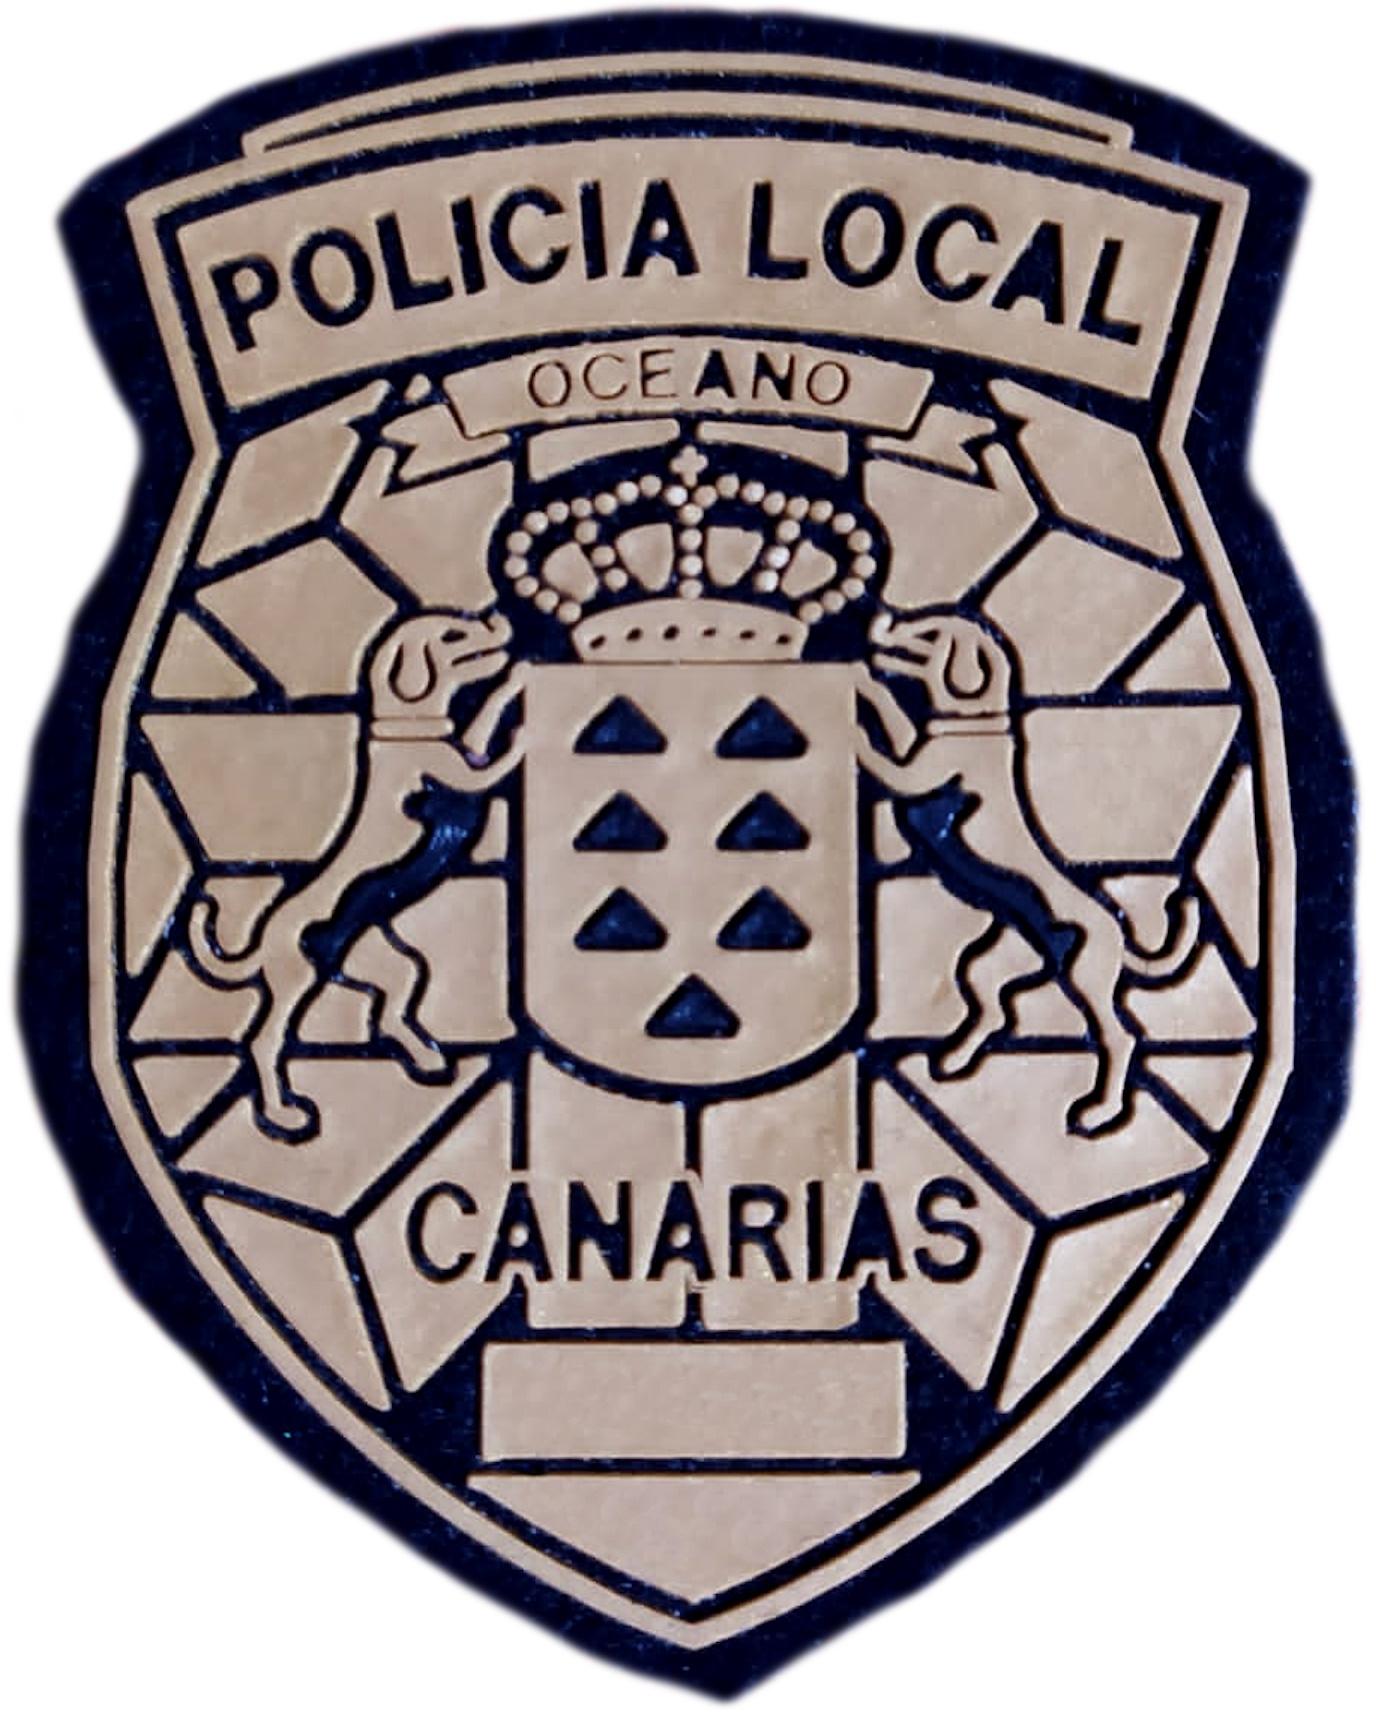 Policía Local Canarias parche insignia emblema distintivo Police Dept